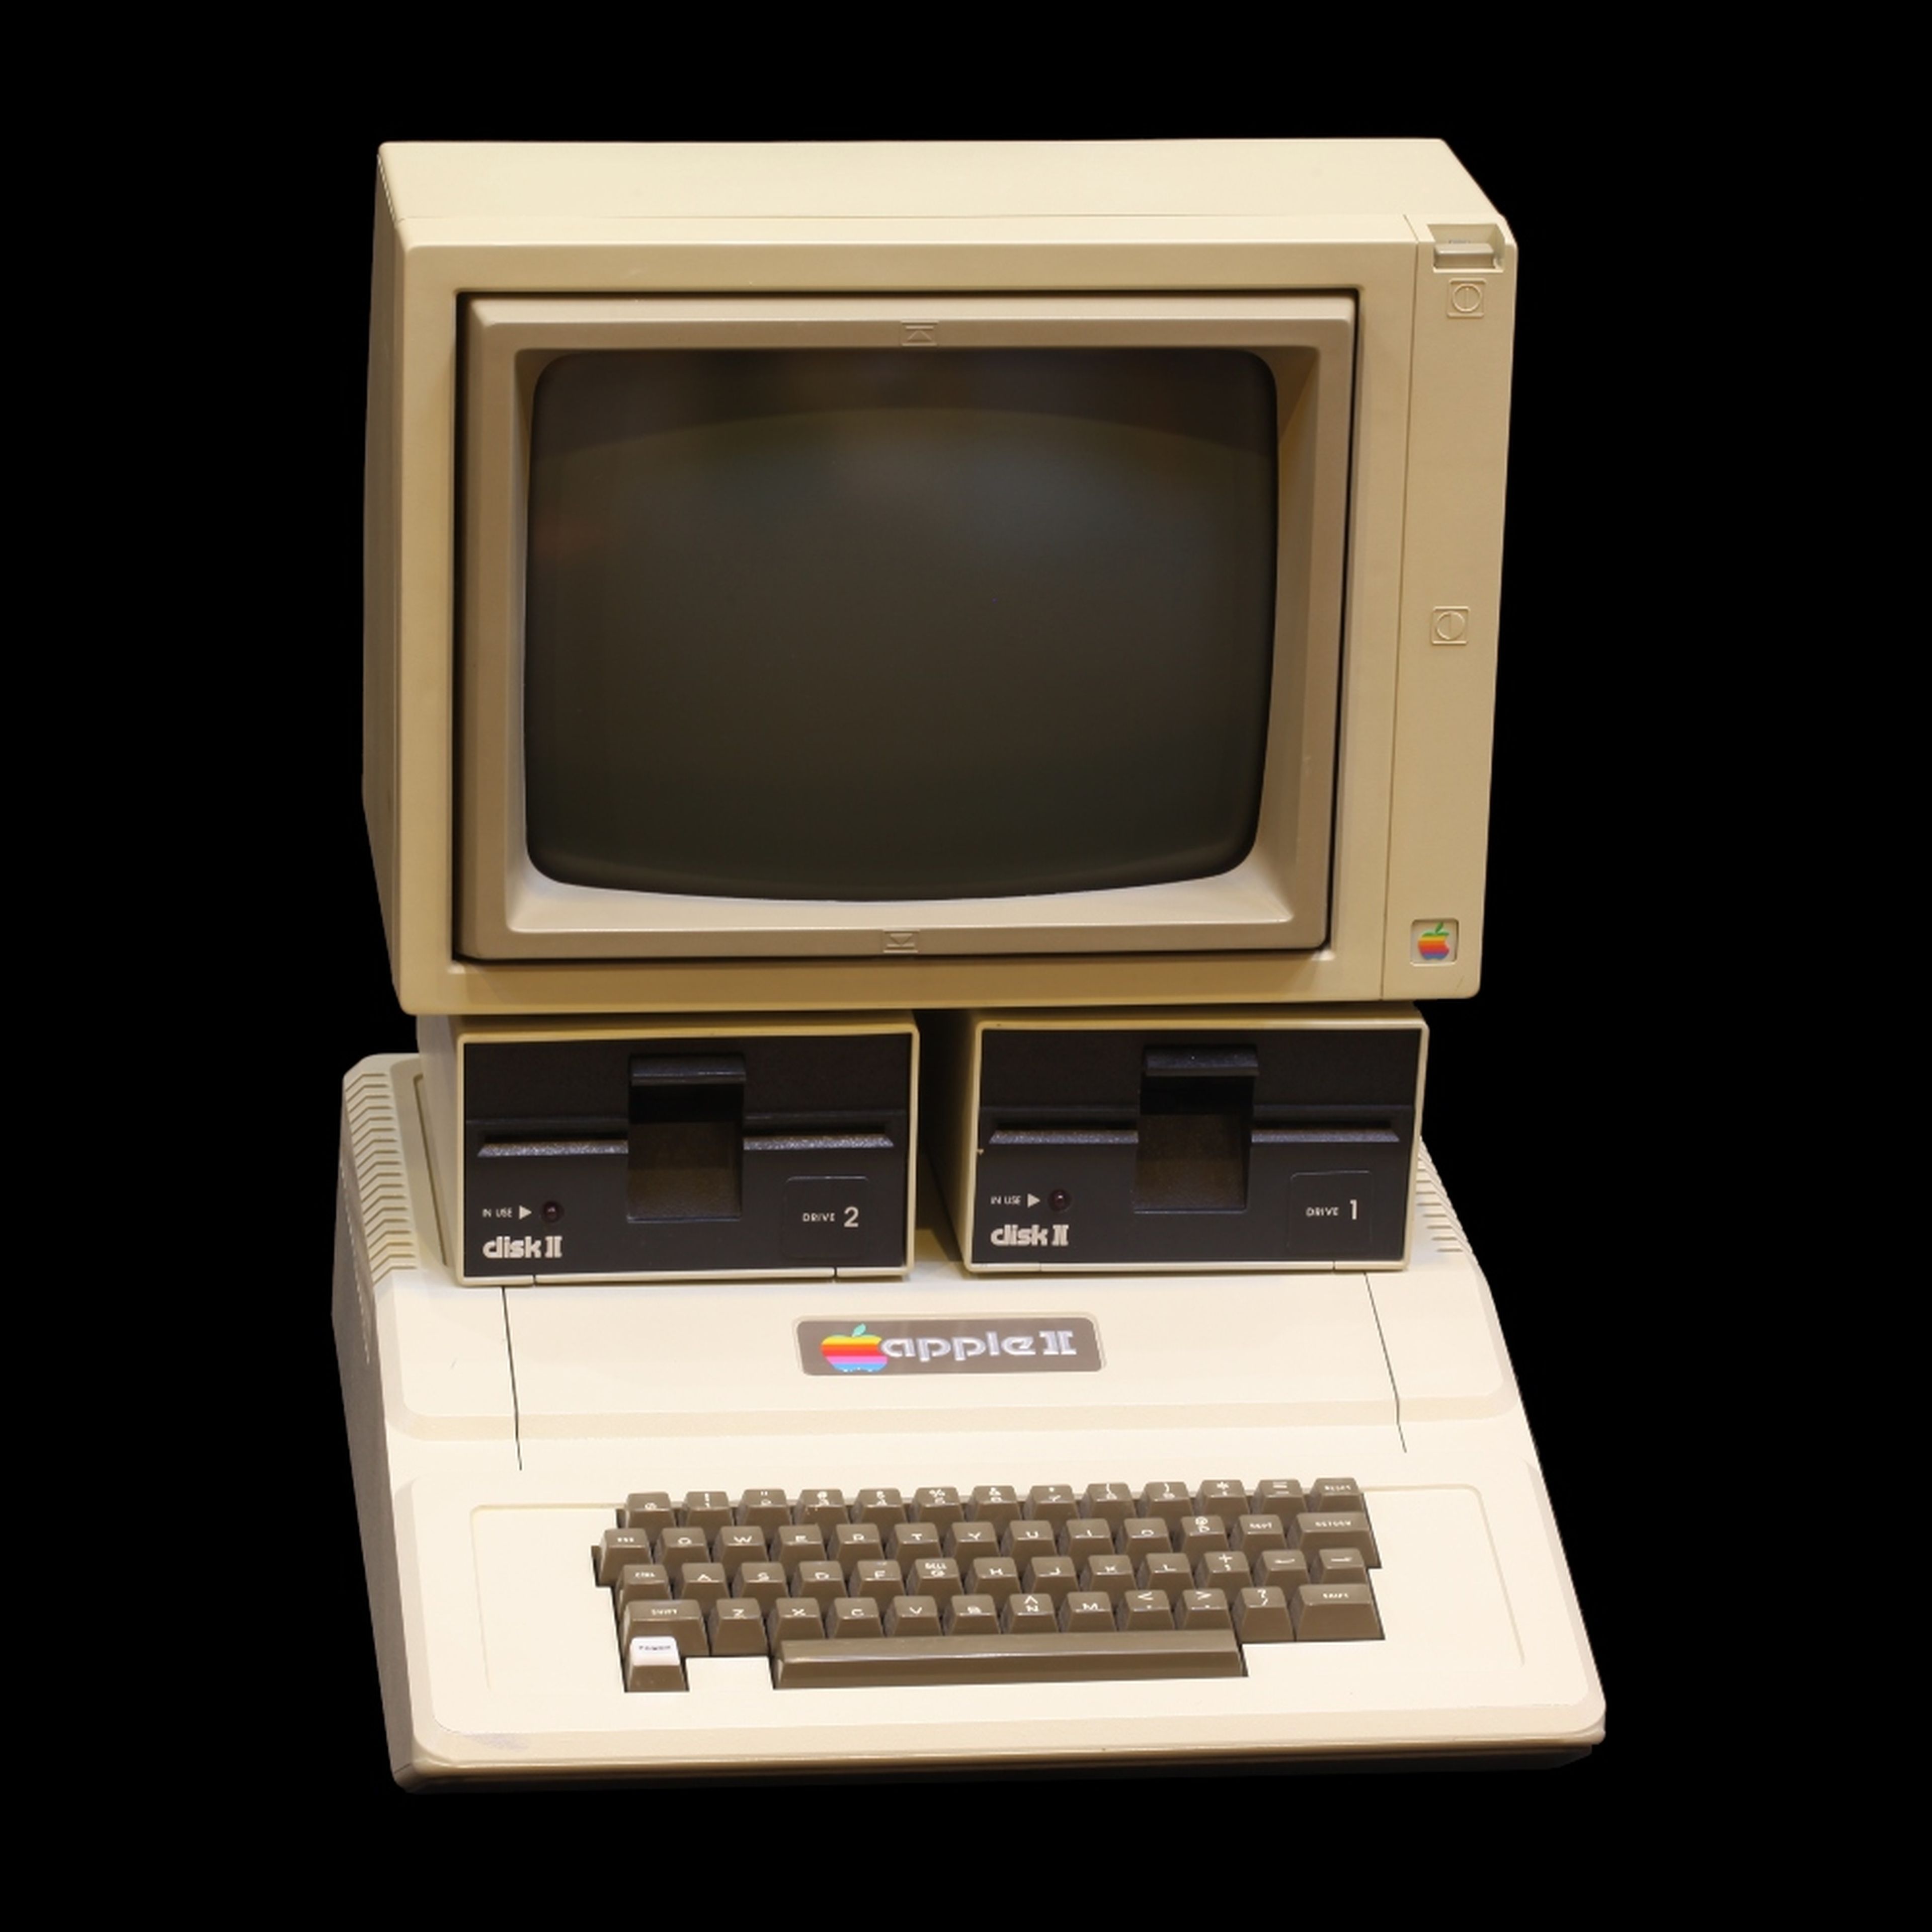 Apple II exhibido en el Musée Bolo de la Escuela Politécnica Federal de Lausana.